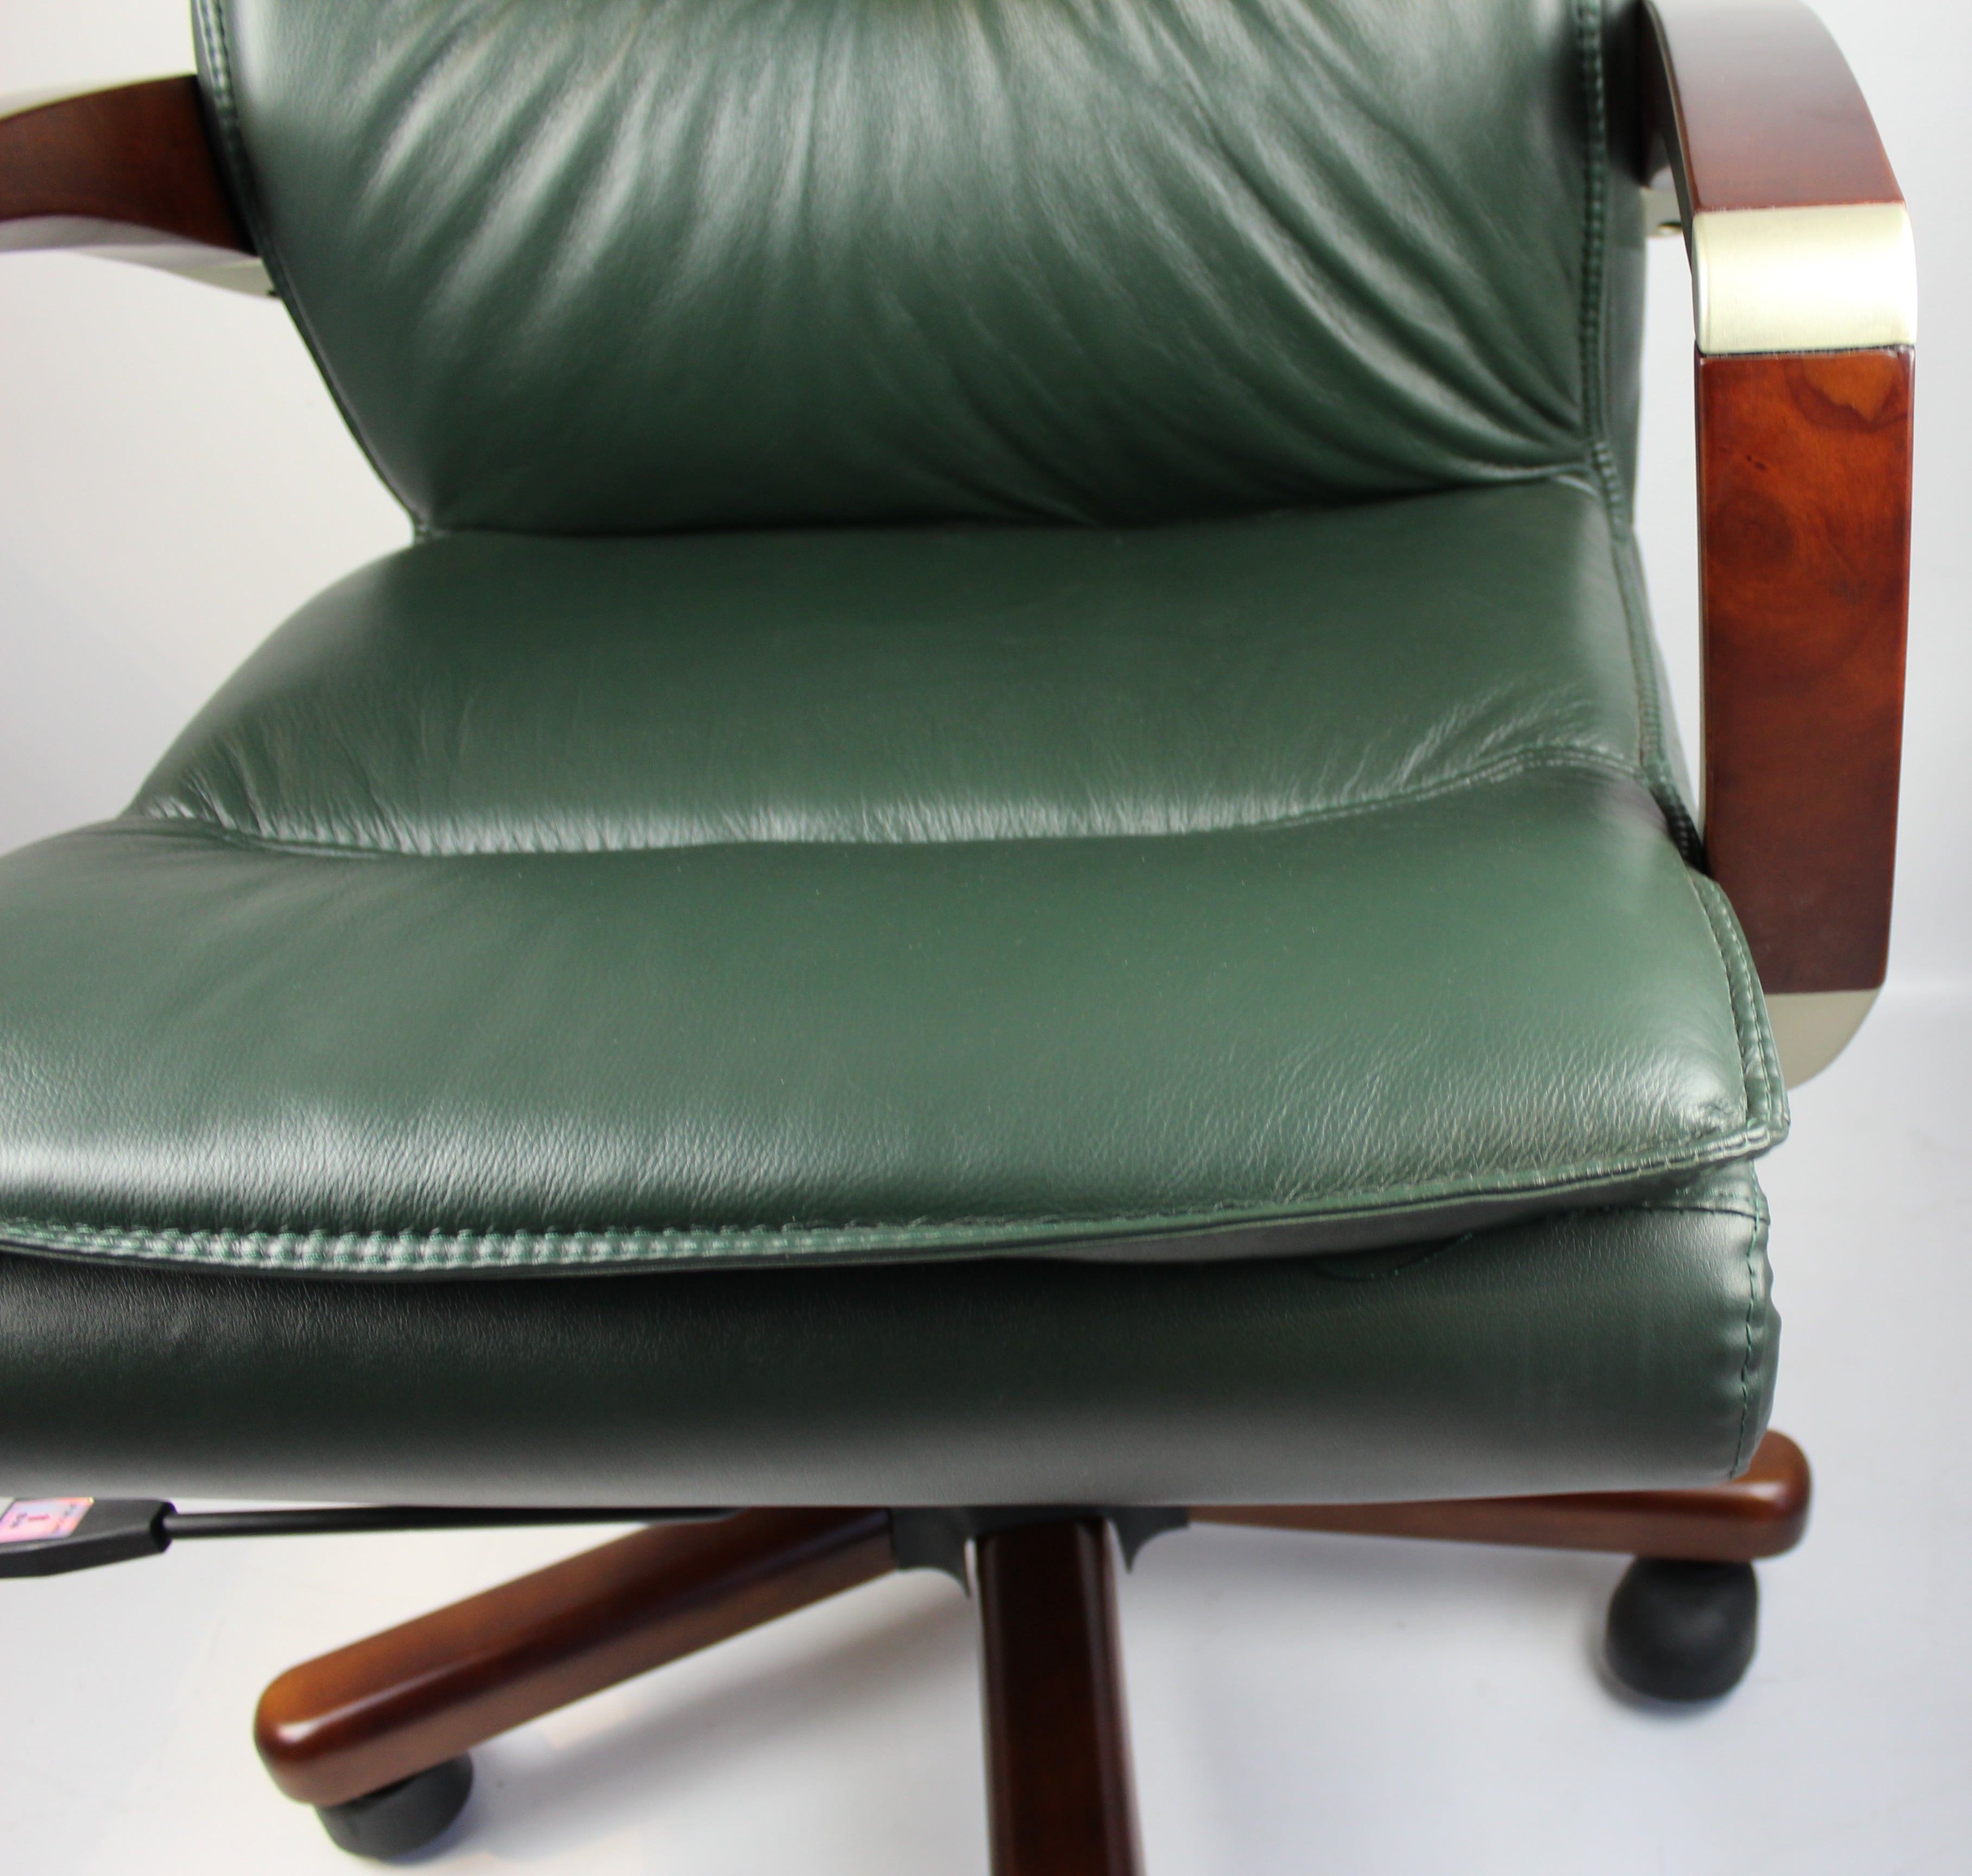 Senato Executive Green Leather Office Chair - SEN-DES-9102